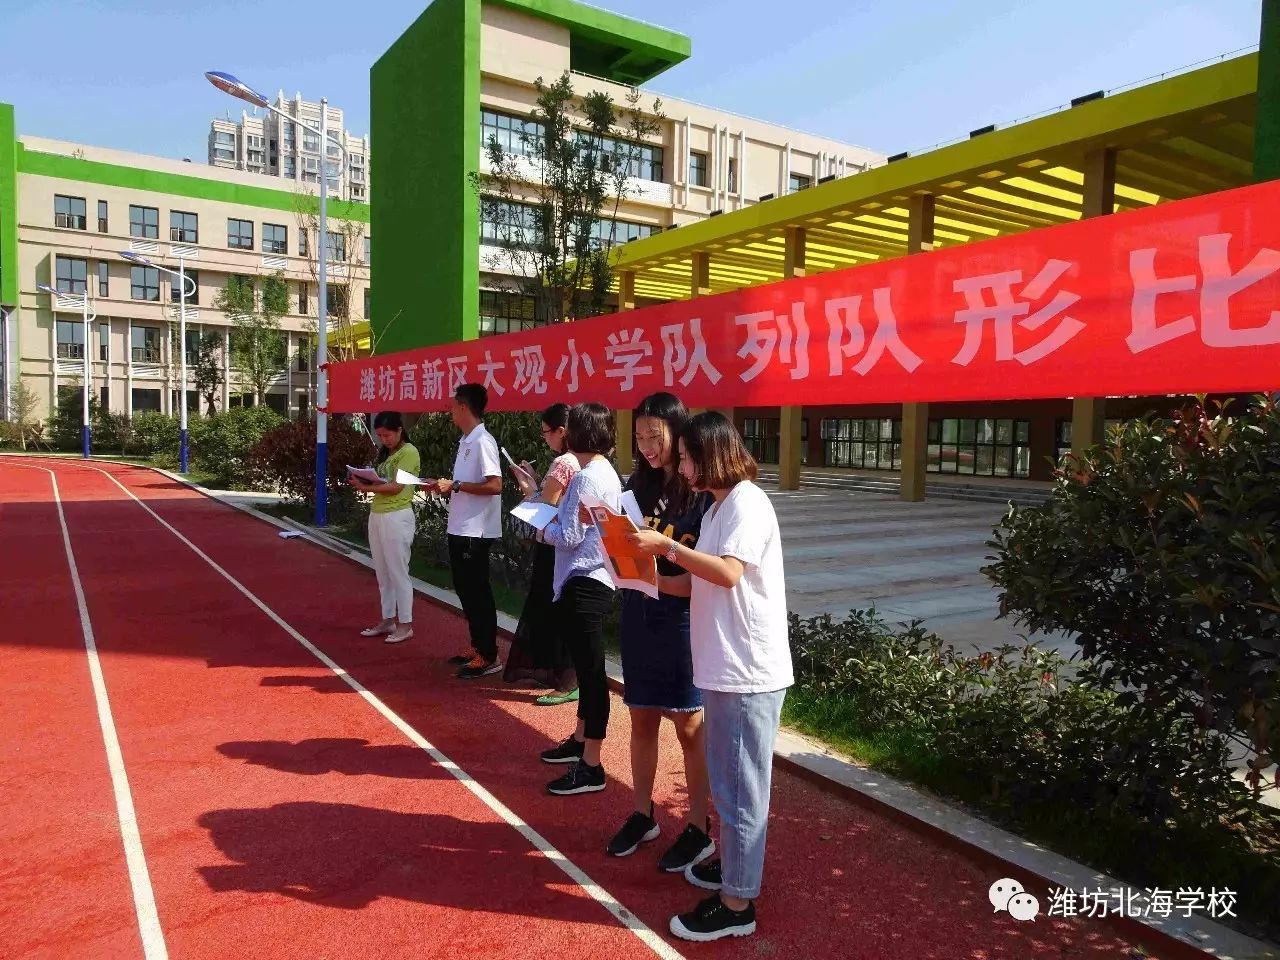 资讯潍坊高新区大观小学隆重举行第一届队列队形比赛活动